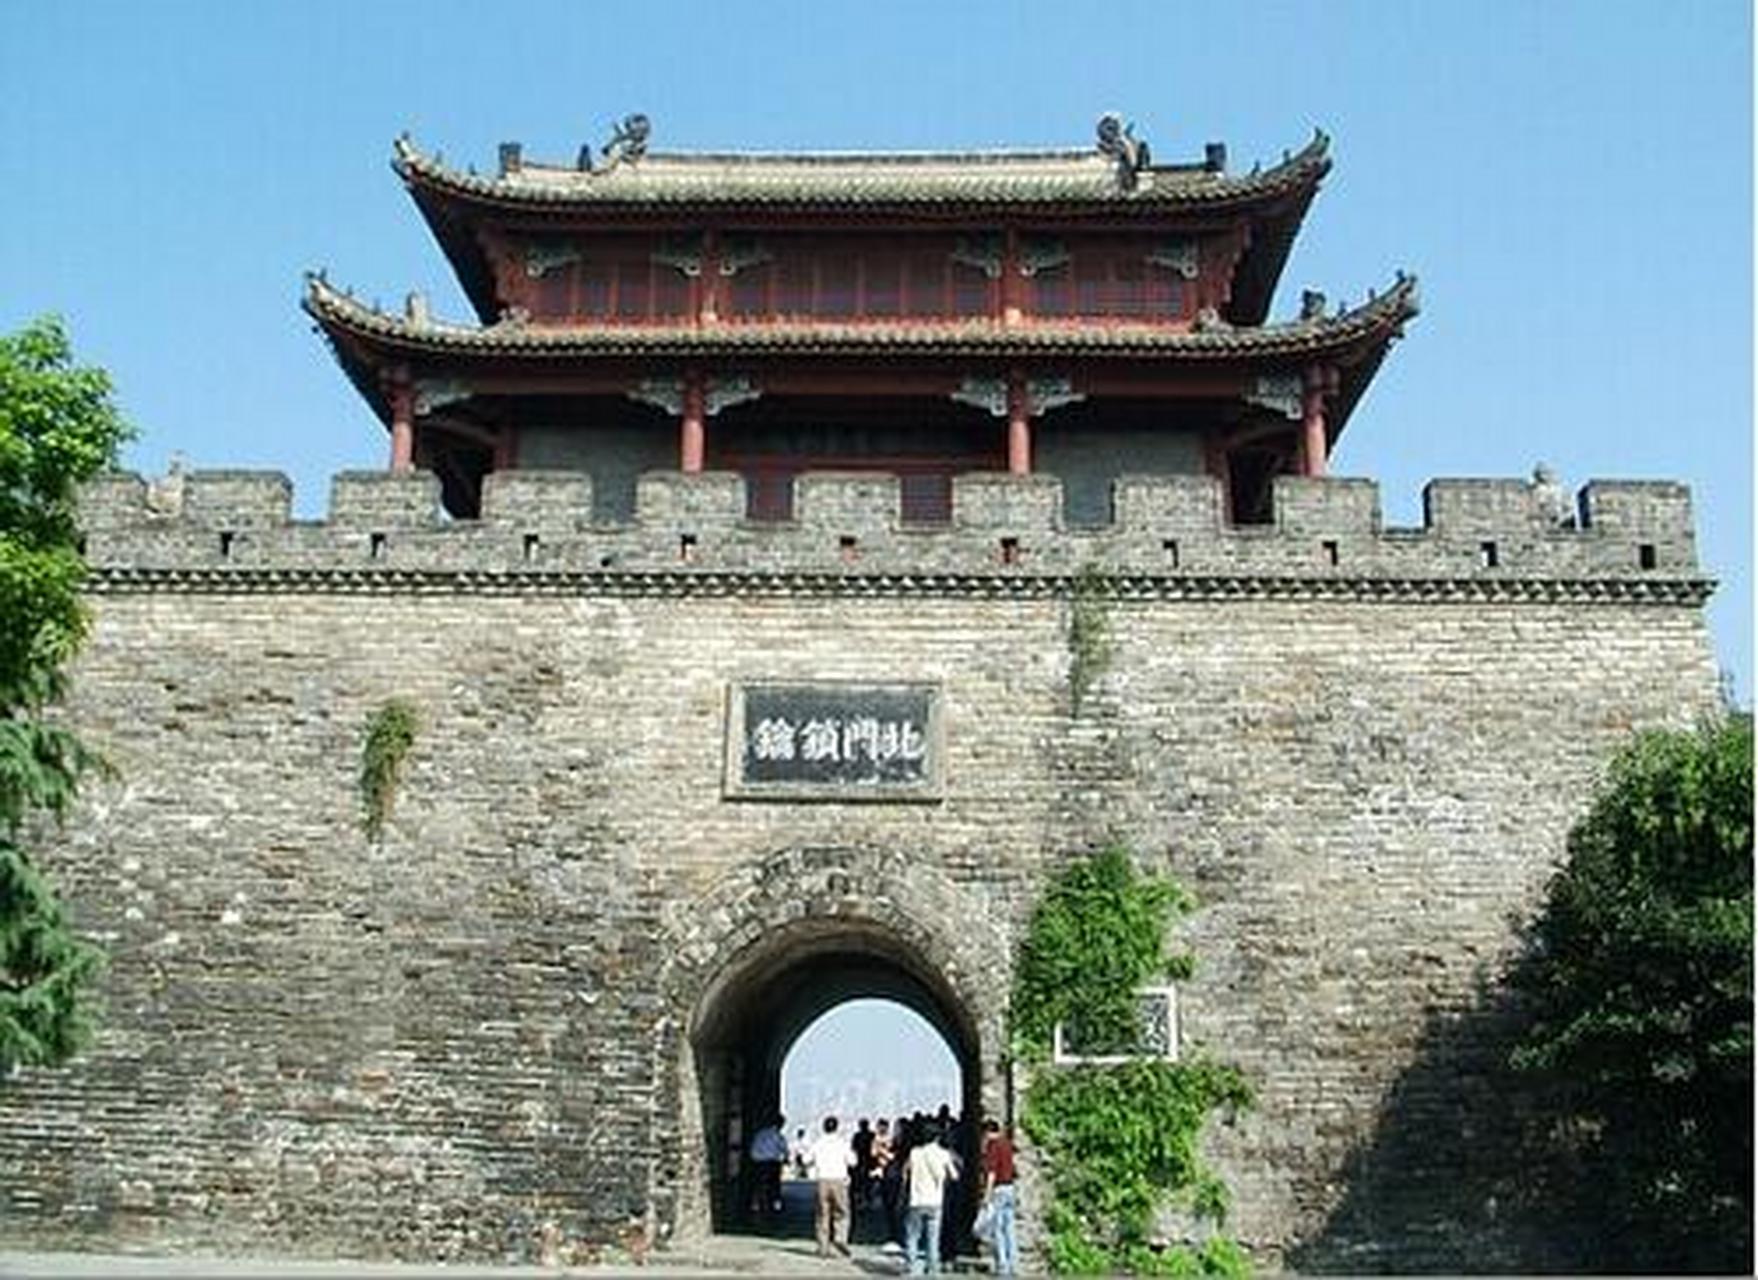 中国十大古城墙,你知道有几个:  第10名, 曲阜明故城墙  第9名,平遥